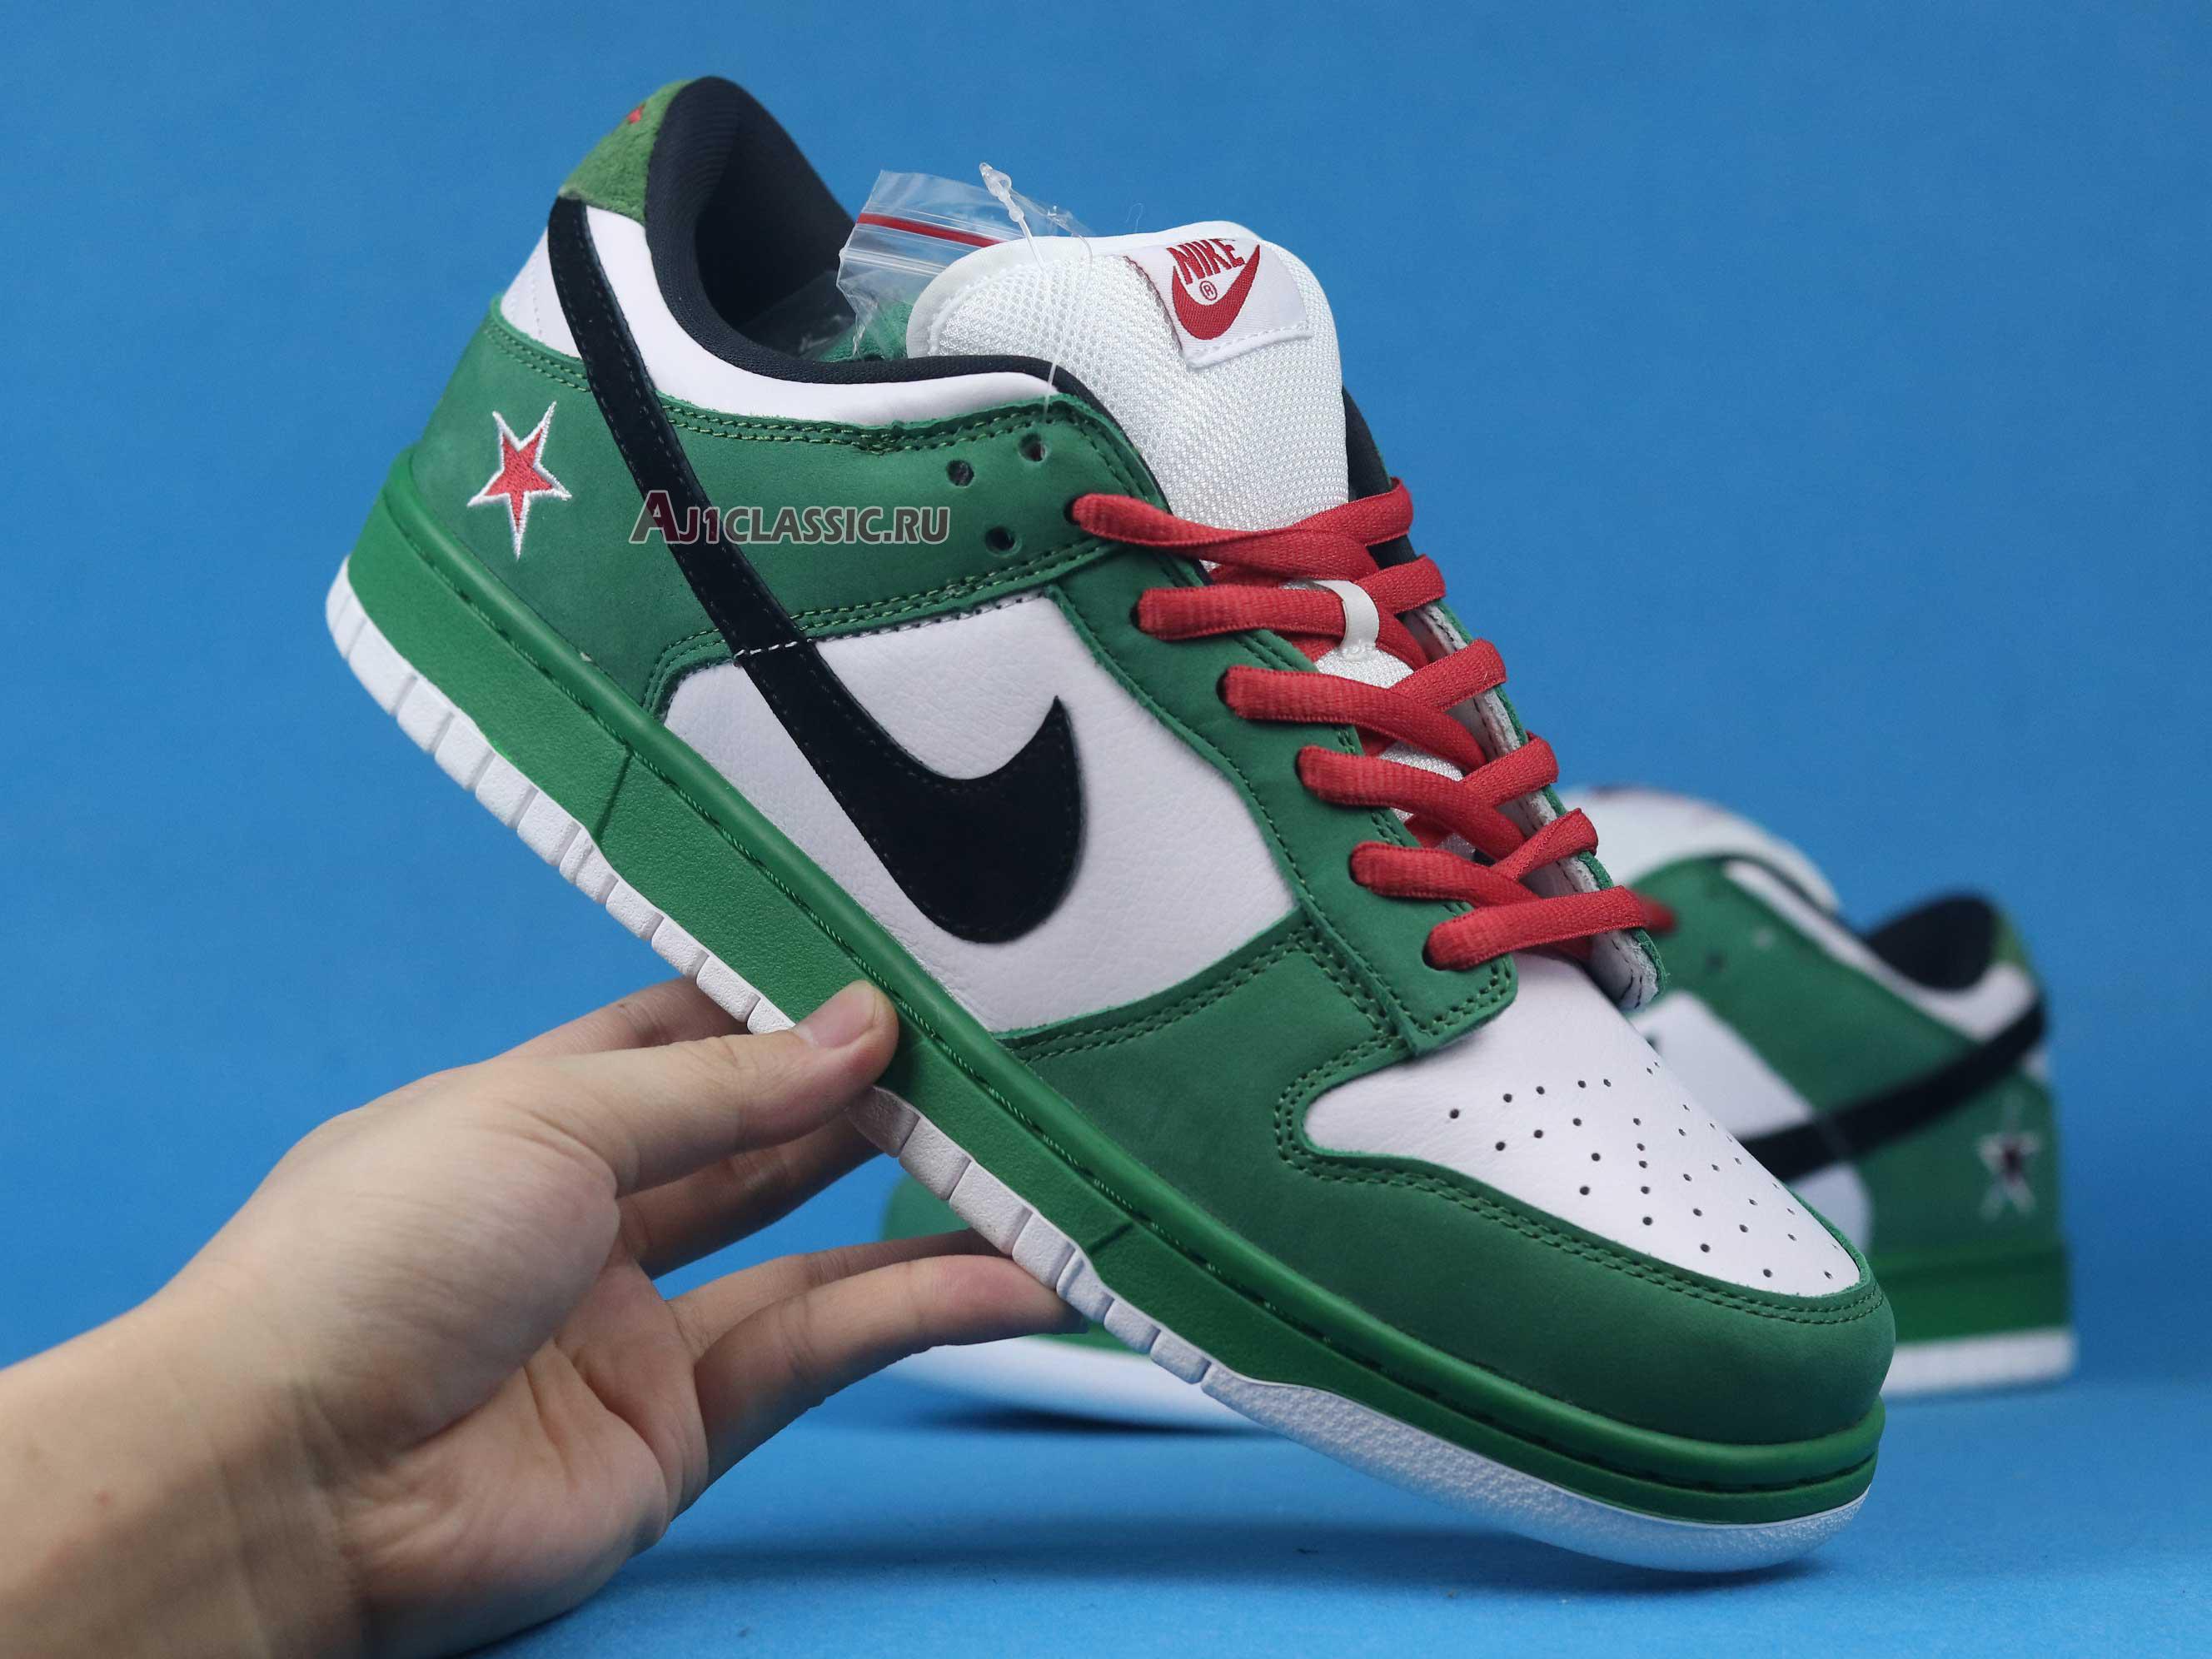 Nike Dunk Low Pro SB "Heineken" 304292-302